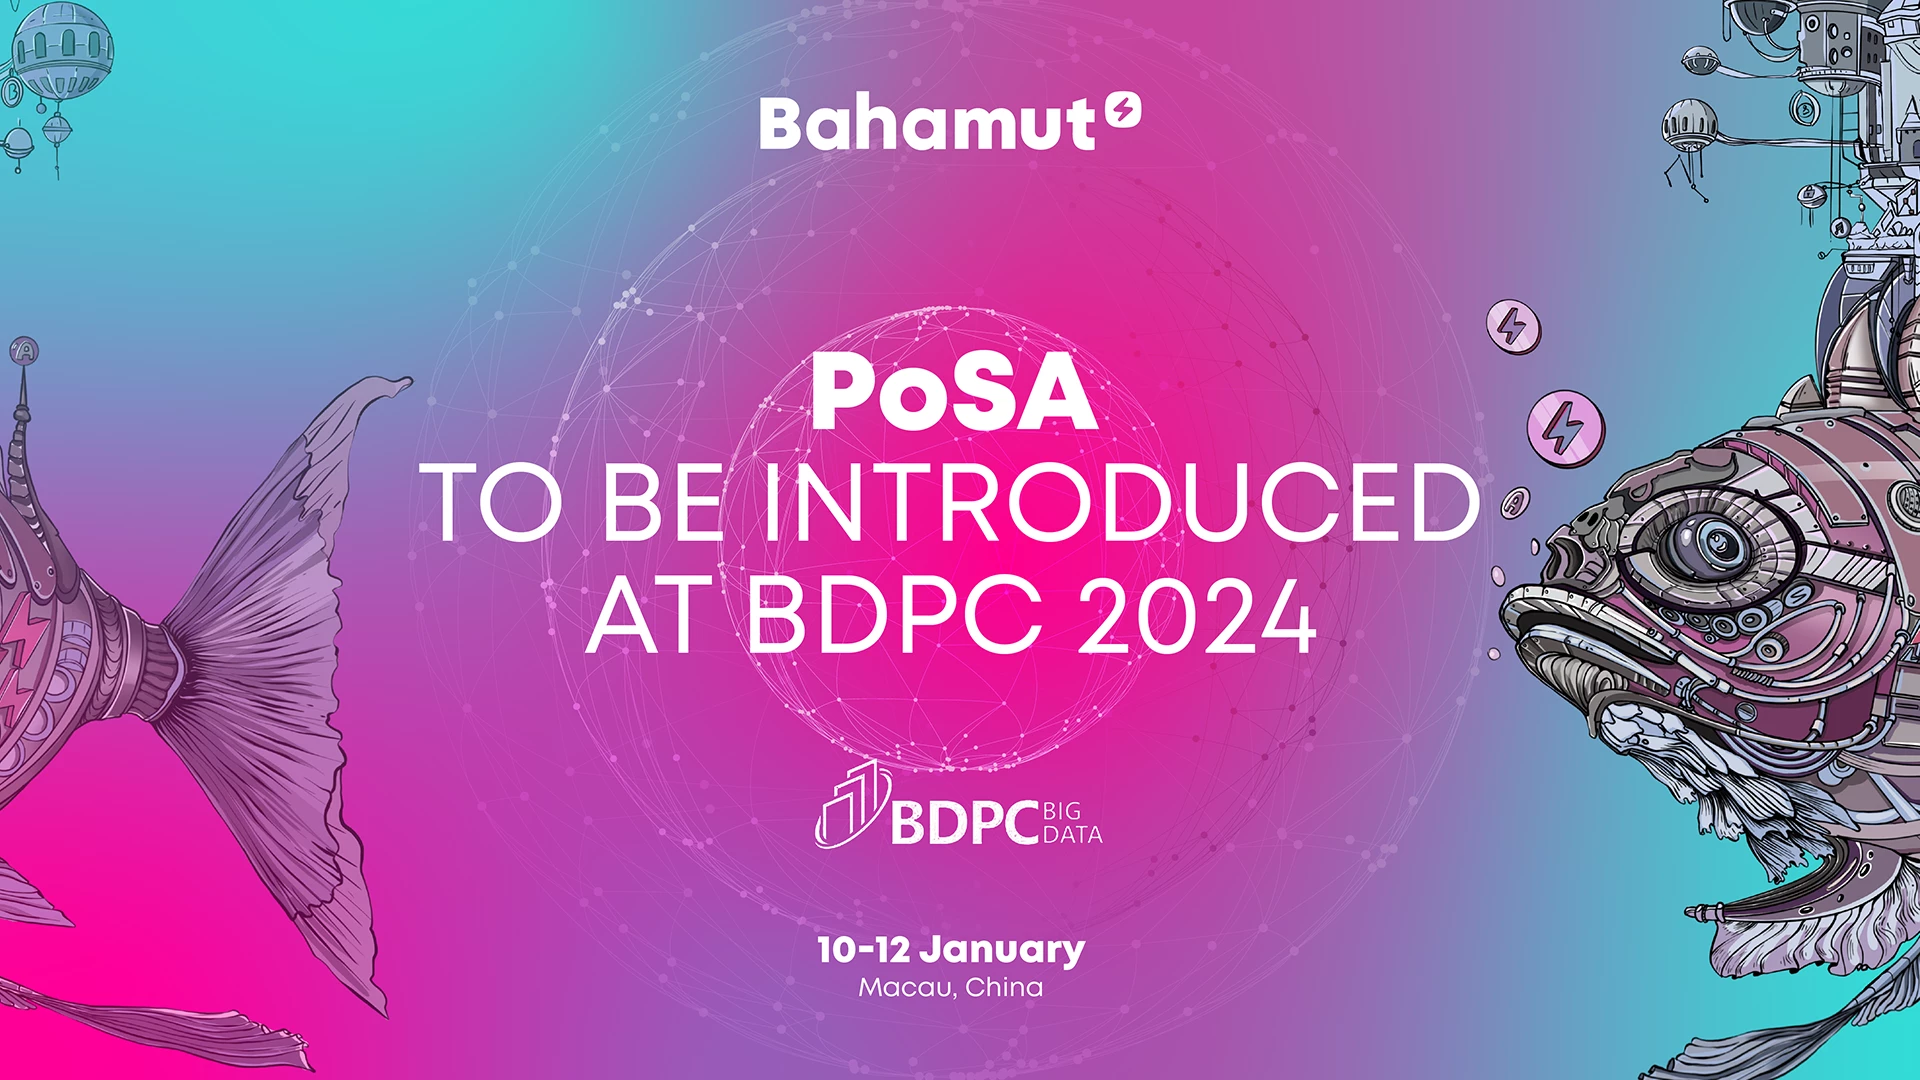 سيتم عرض إثبات الحصة والنشاط (PoSA) الخاص بـ Bahamut في BDPC 2024